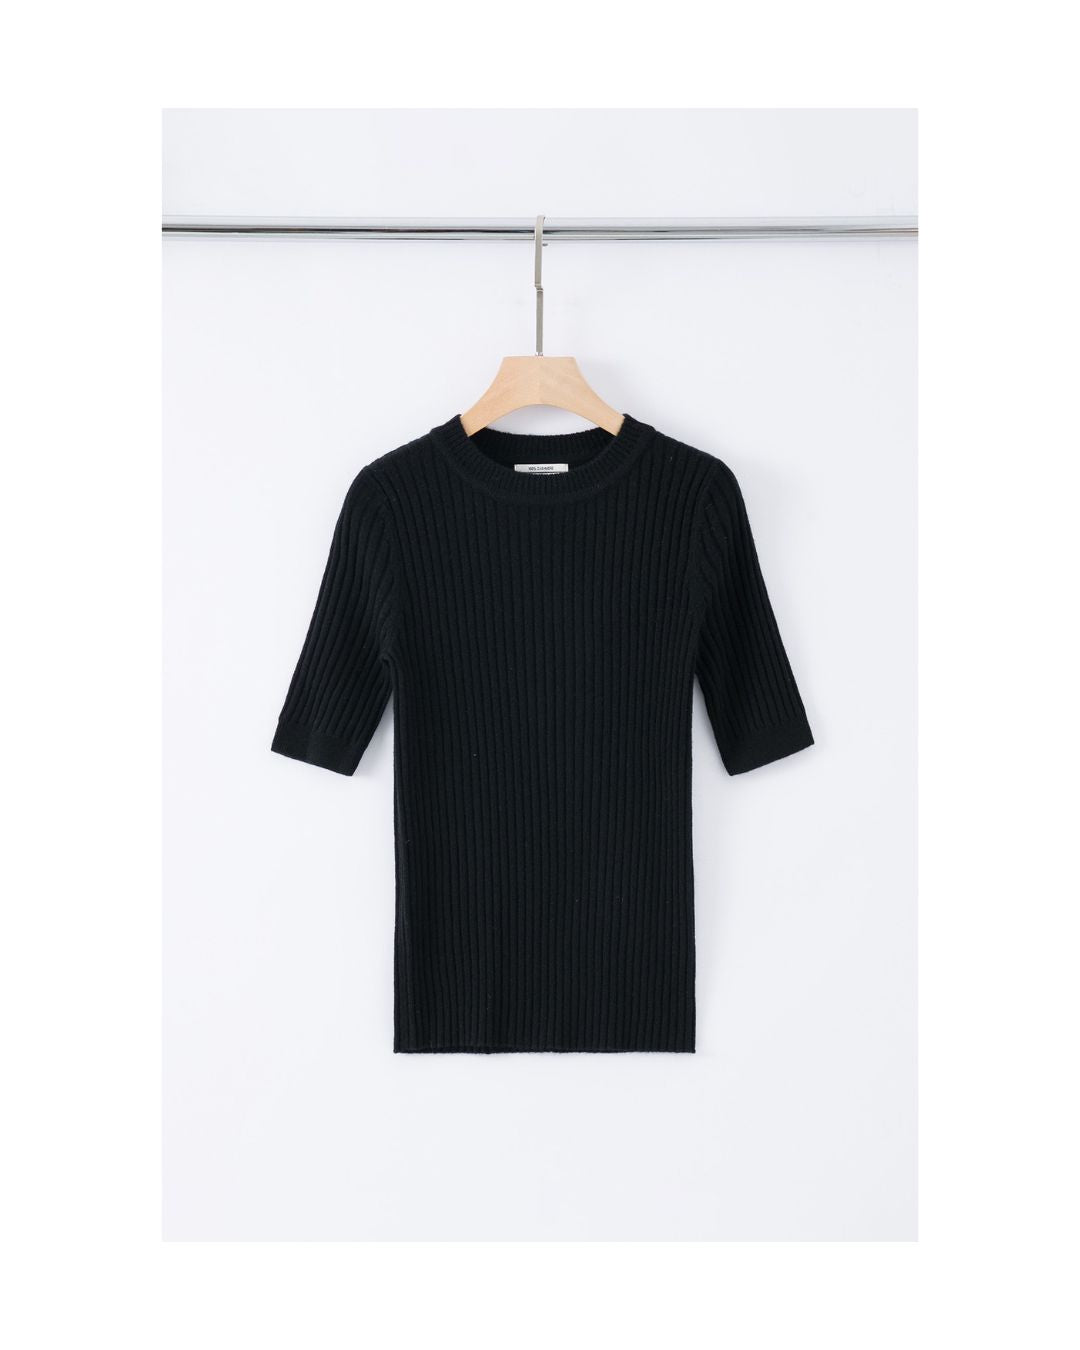 N.48 ALEGER 100% Cashmere Short Sleeve T - BLACK